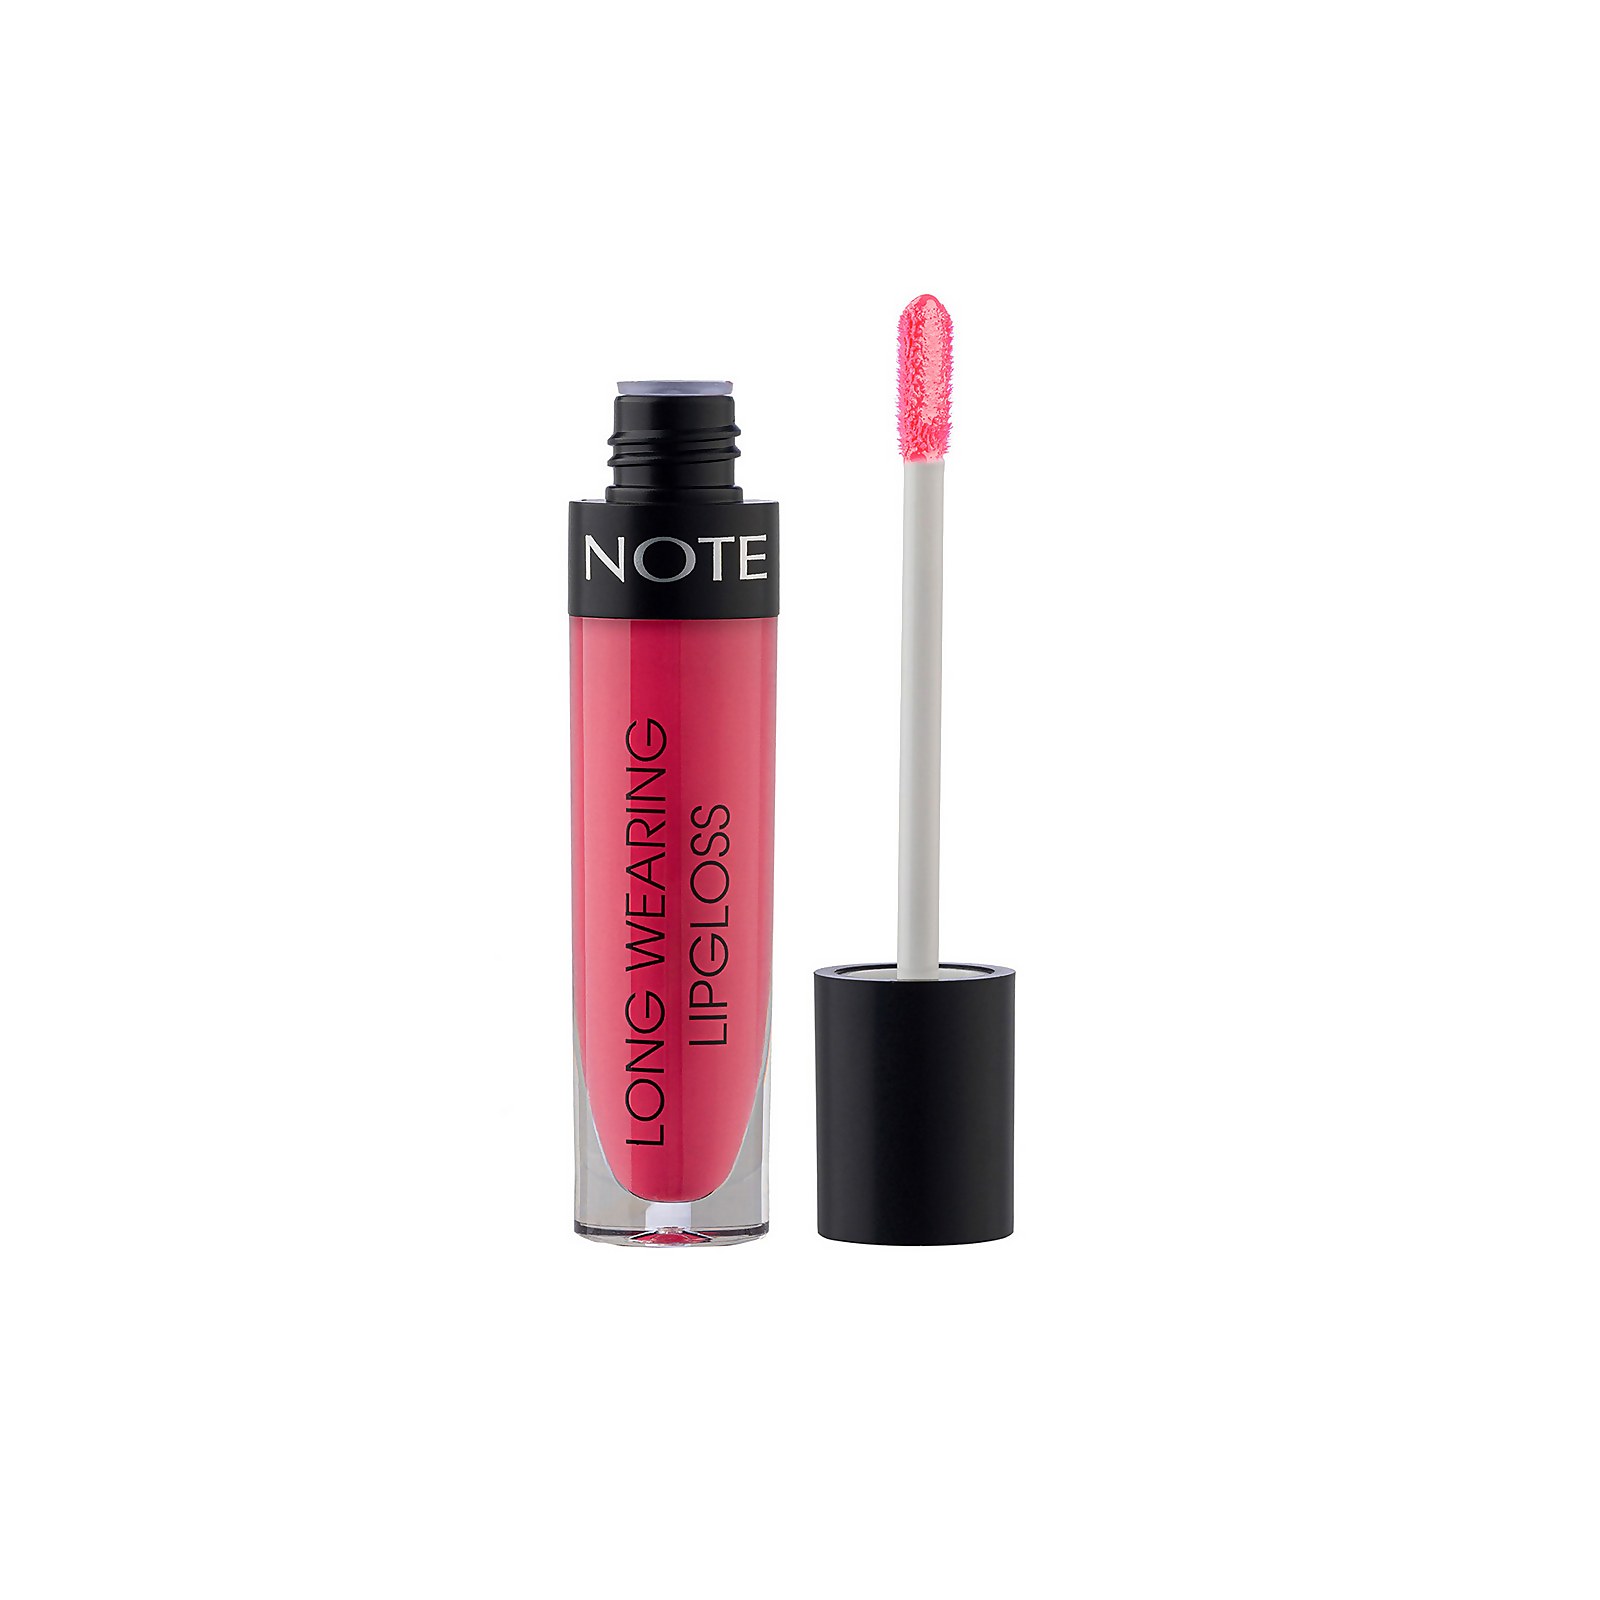 Note Cosmetics Long Wearing Lip Gloss 6ml (Various Shades) - 13 Natural Pink